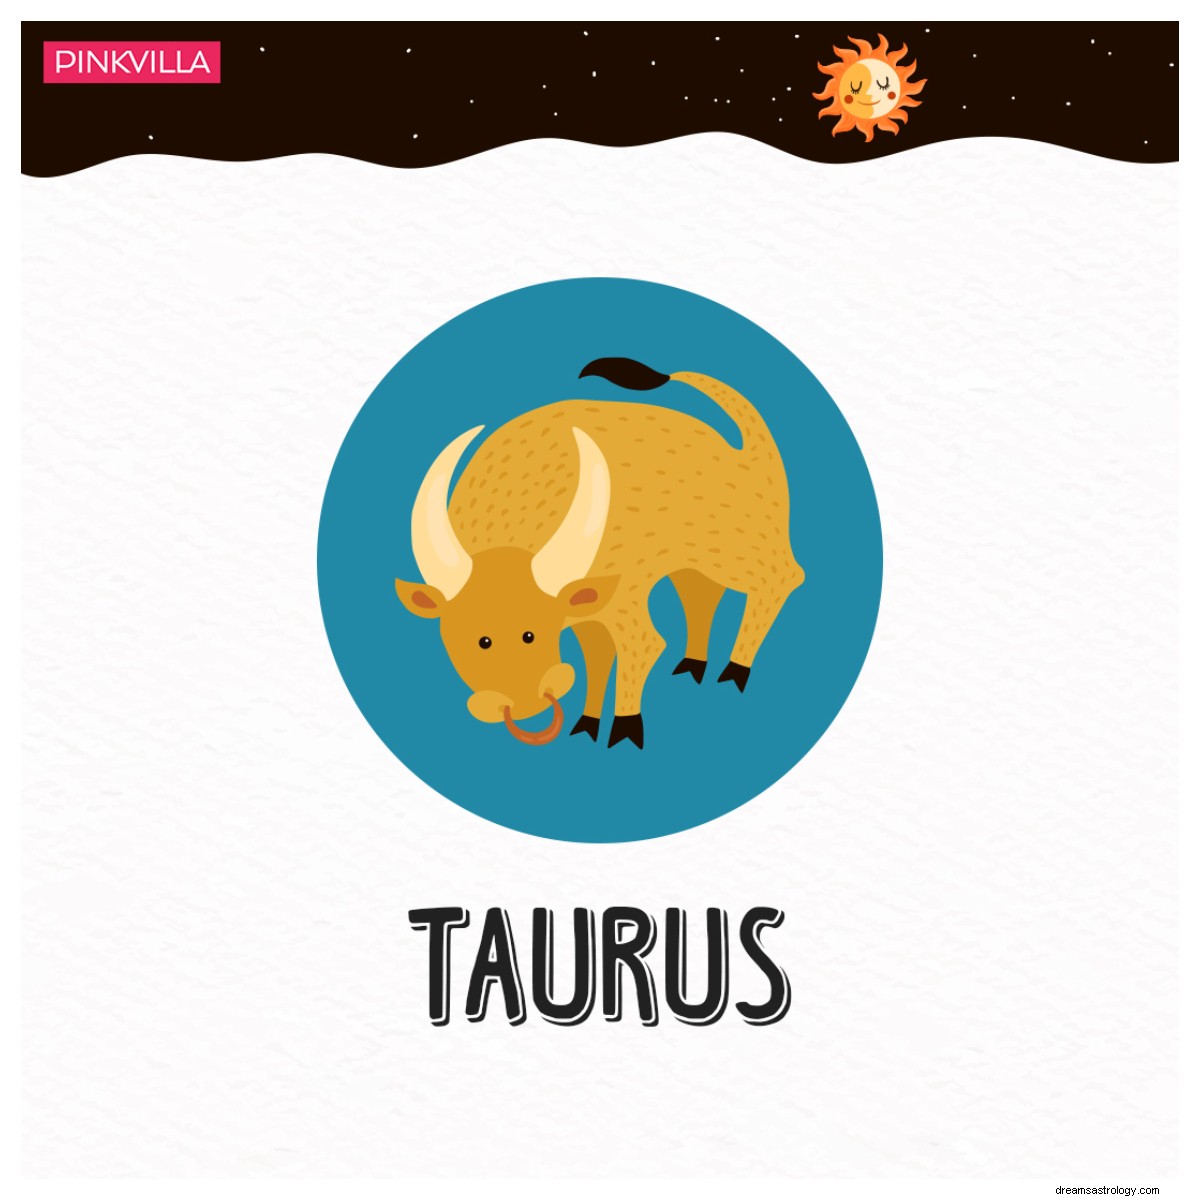 De Aries a Escorpio:4 signos del zodiaco que son callejeros 